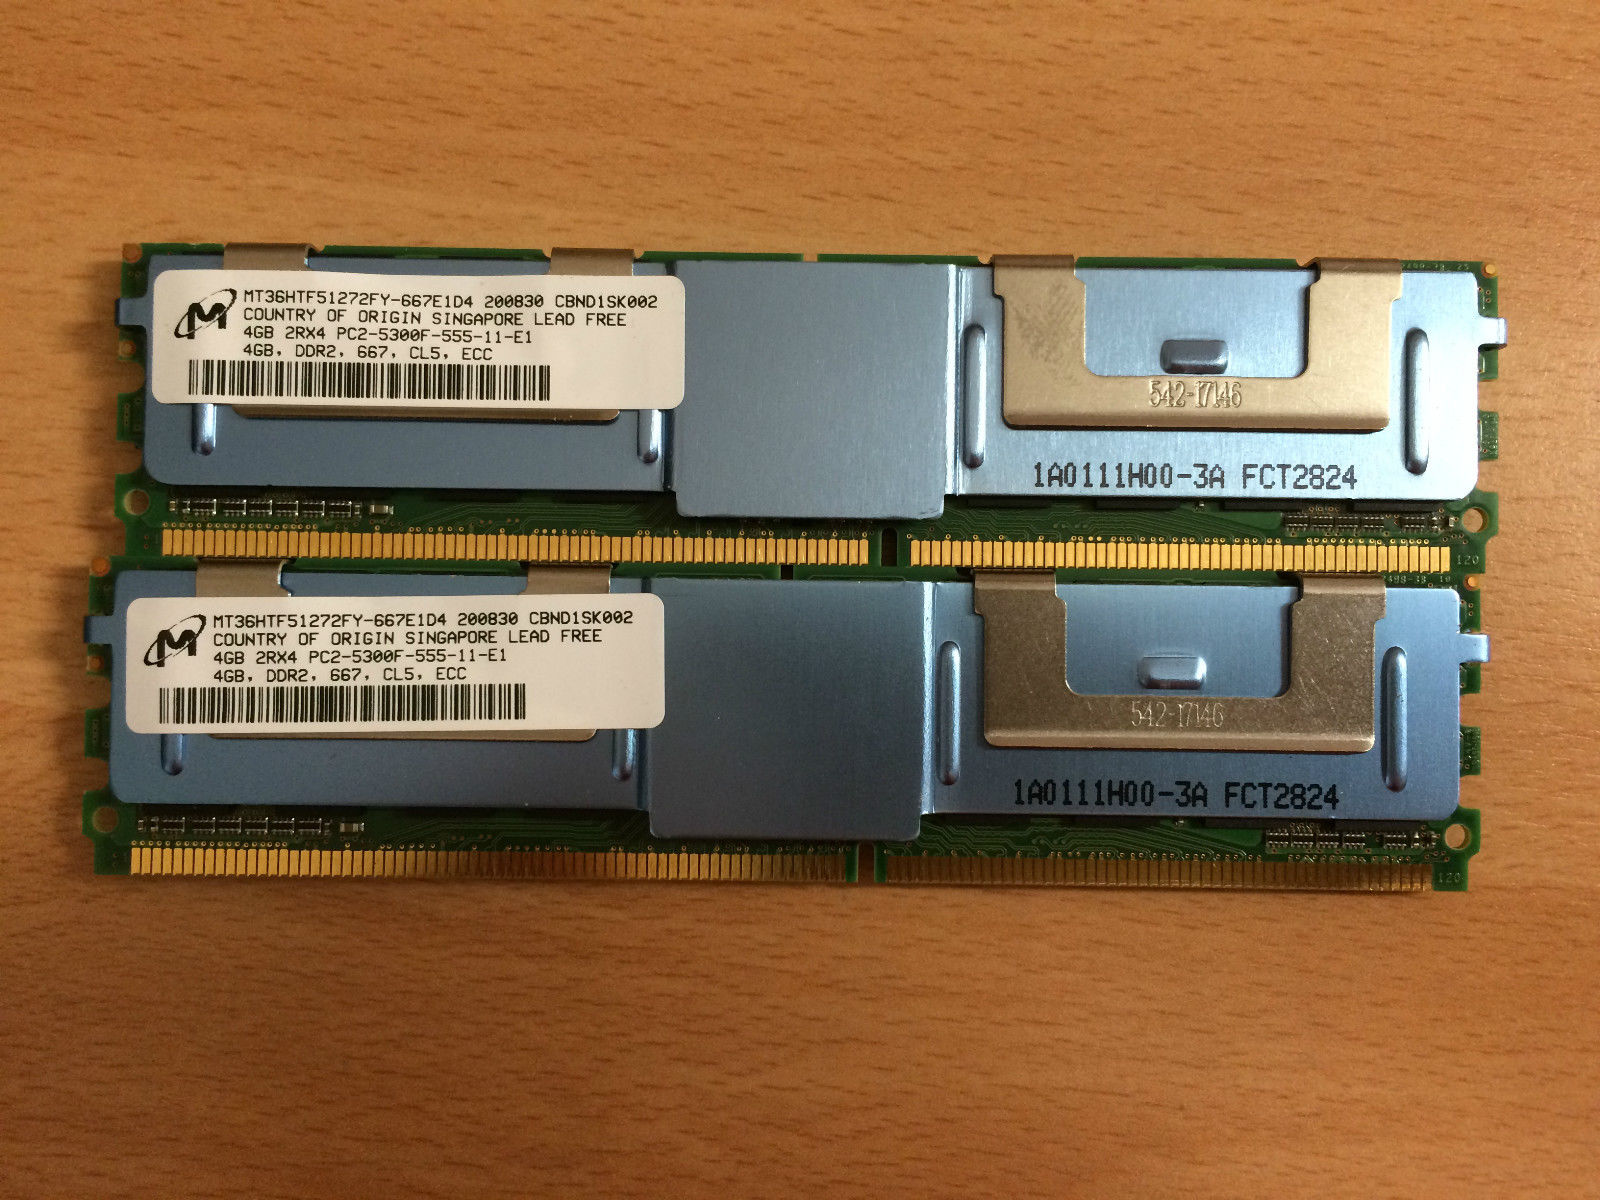 2x4GB-HP-MT36HTF51272FY-667E1D4-PC2-5300-DDR2-667MHz-Server-RAM-ECC.jpg